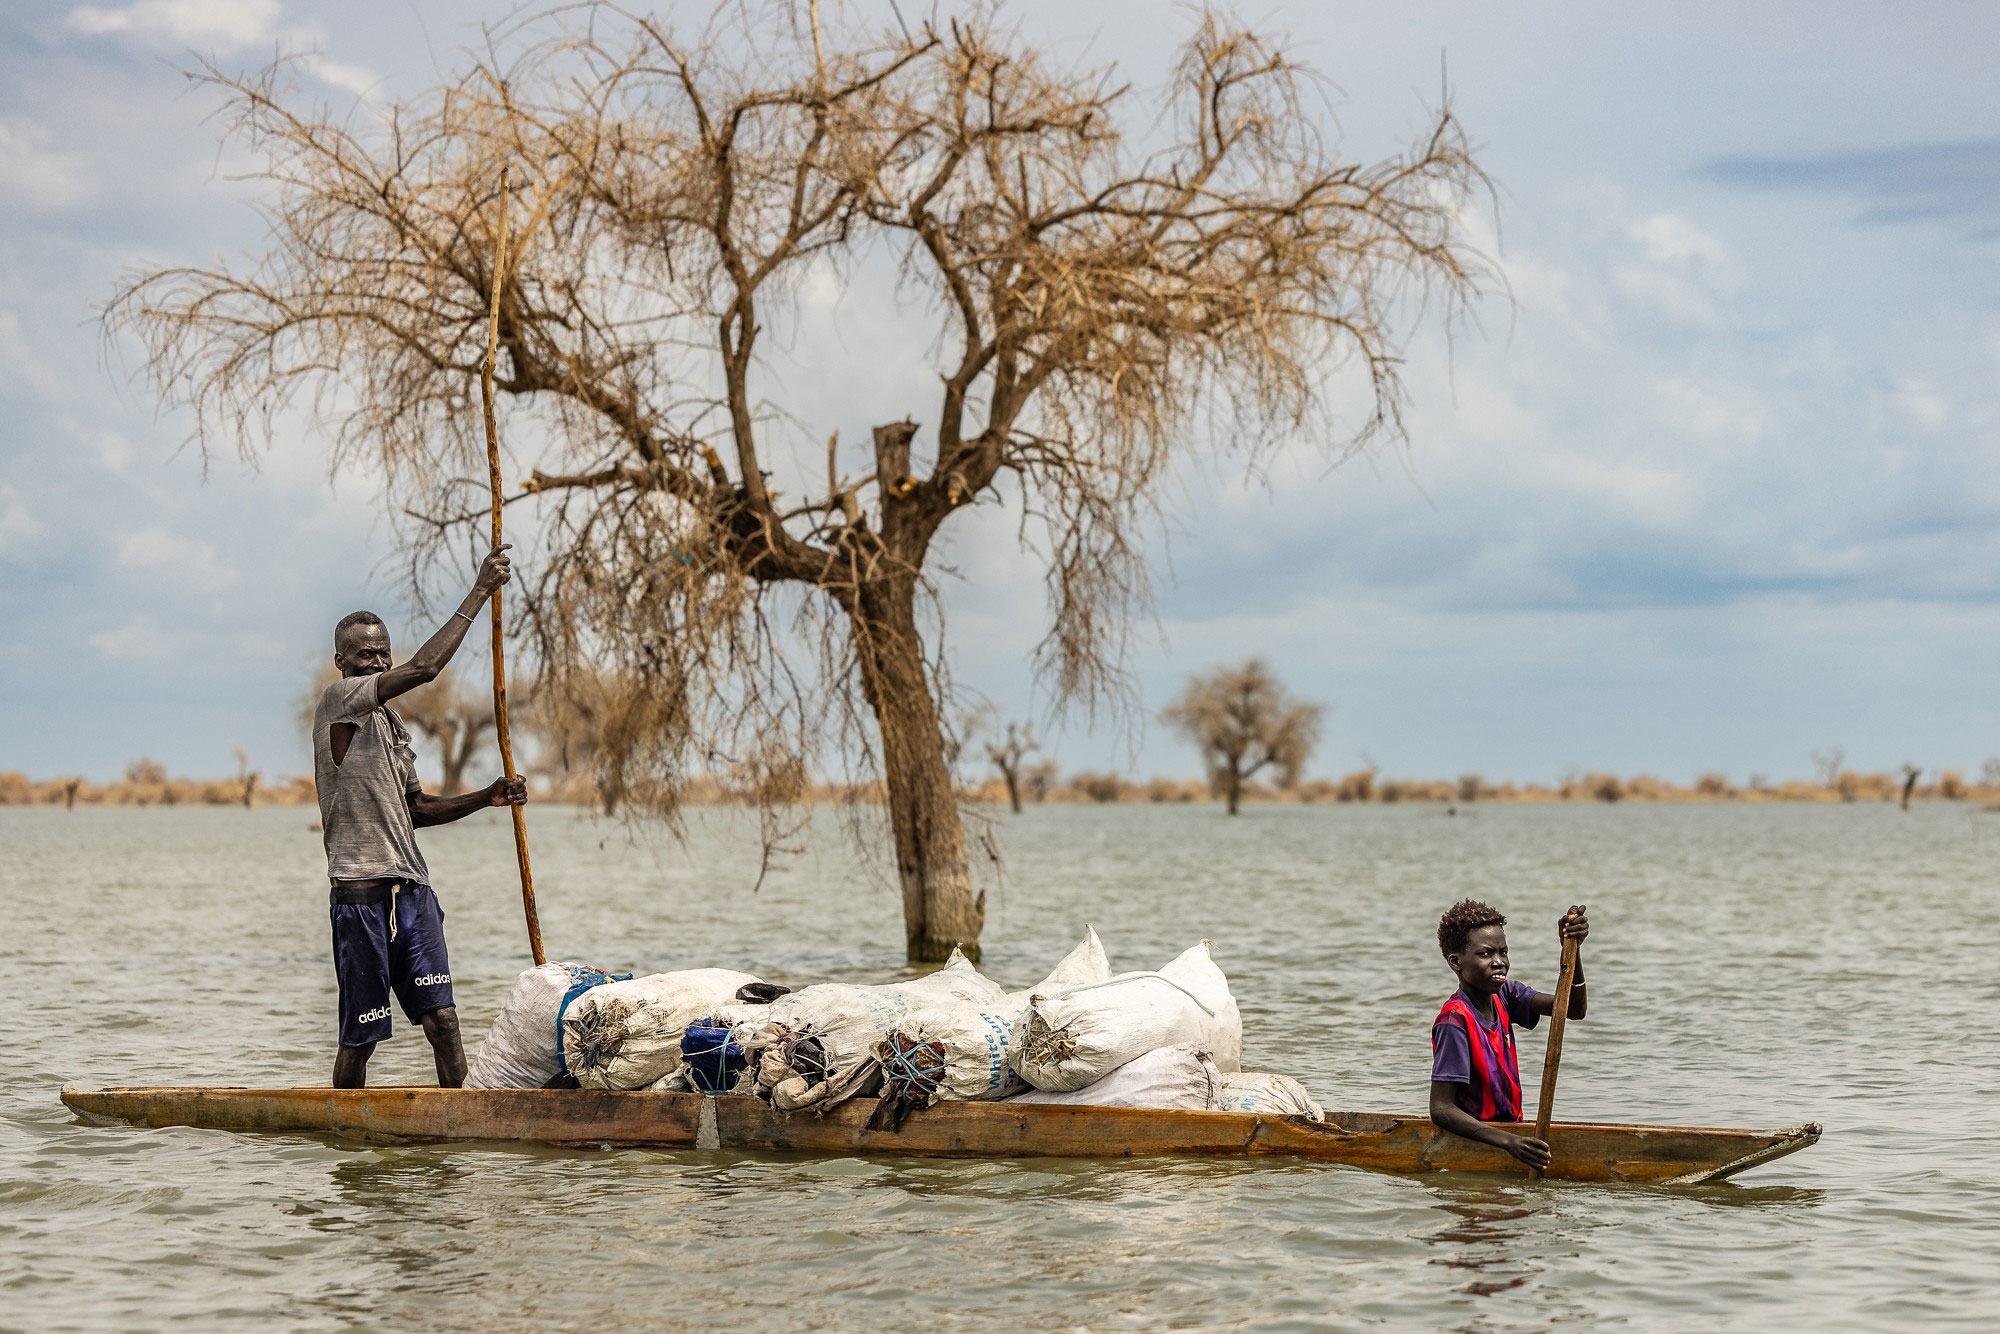 دنیا کے کئی دوسرے حصوں کی طرح جنوبی سوڈان میں بھی موسمیاتی تبدیلی کے باعث سیلاب اور دوسری شدید موسمی آفات دیکھنے کو مل رہی ہیں۔